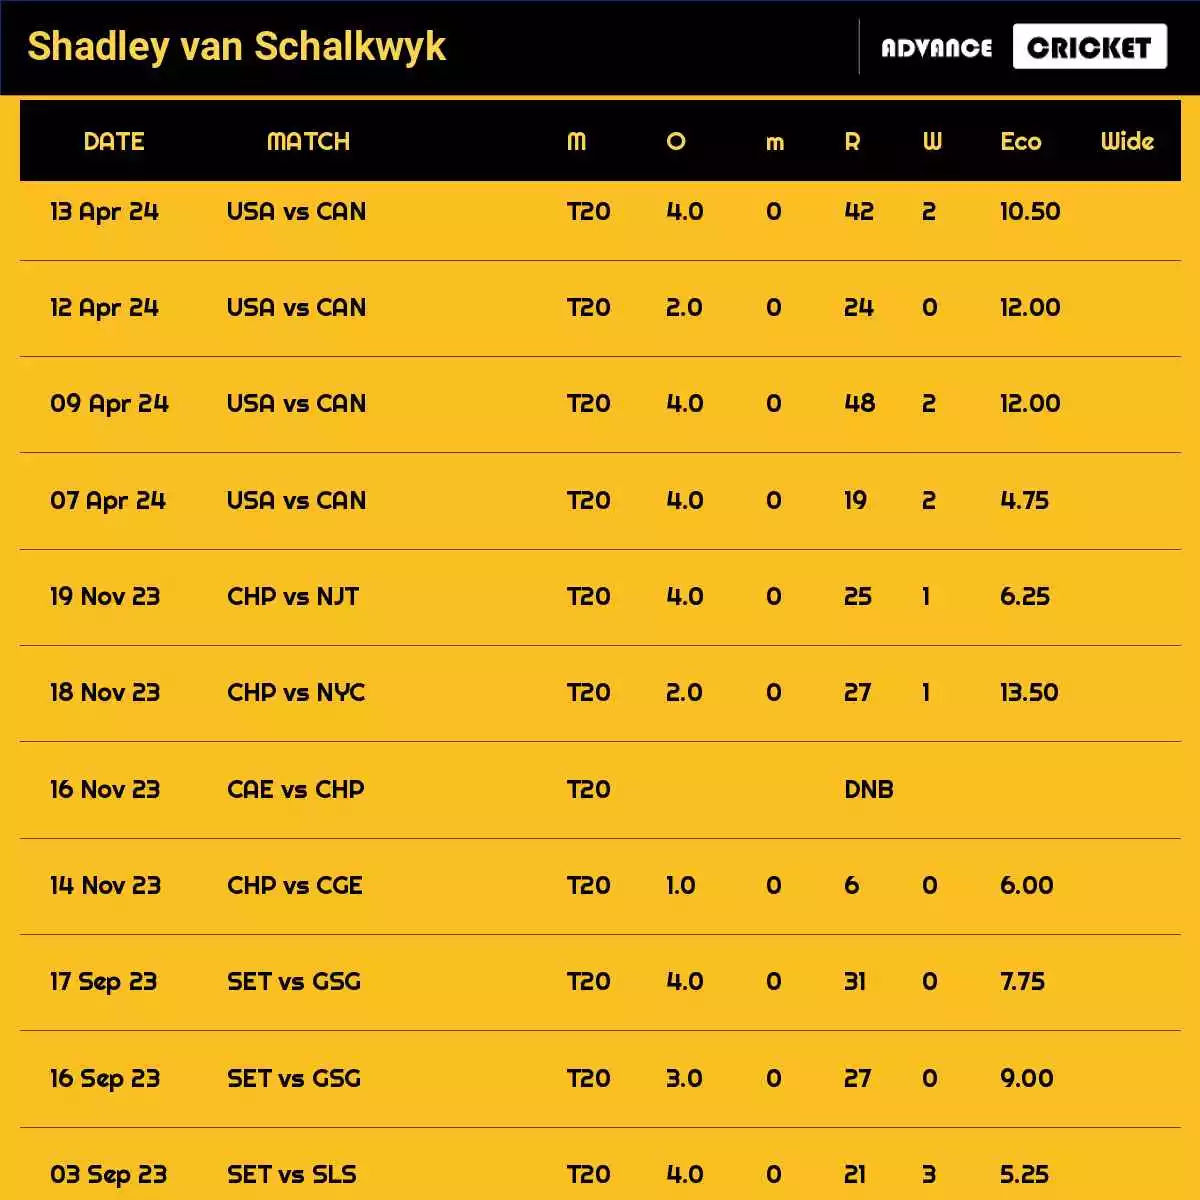 Shadley van Schalkwyk Recent Matches Details Date Wise